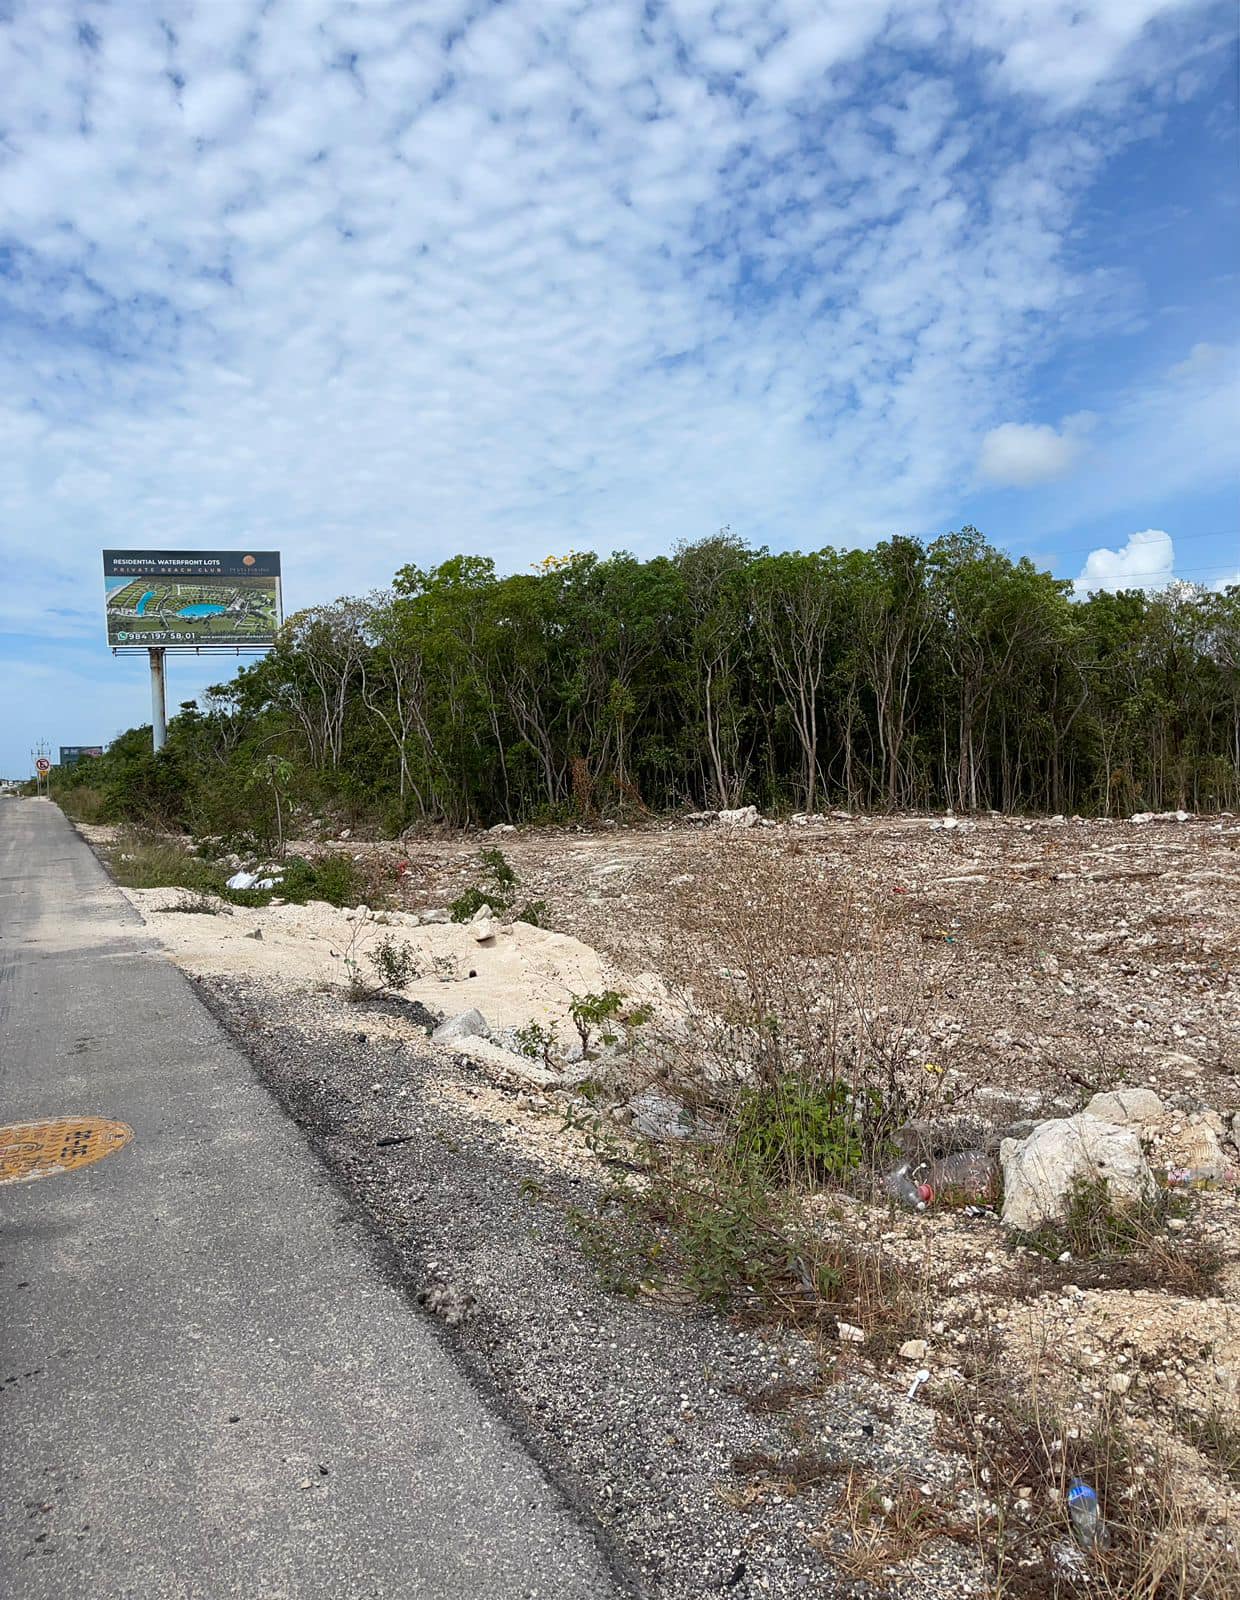 Activistas de Playa del Carmem han exhibido en redes sociales que en el estado de Quintana Roo se han perdido casi 200 mil hectáreas de selva durante un lapso de 15 años, situación que preocupa por el impacto que continua teniendo el desarrollo acelerado urbano, turístico, habitacional e incluso minero a lo largo de toda la extensión de la entidad durante los últimos 47 años.